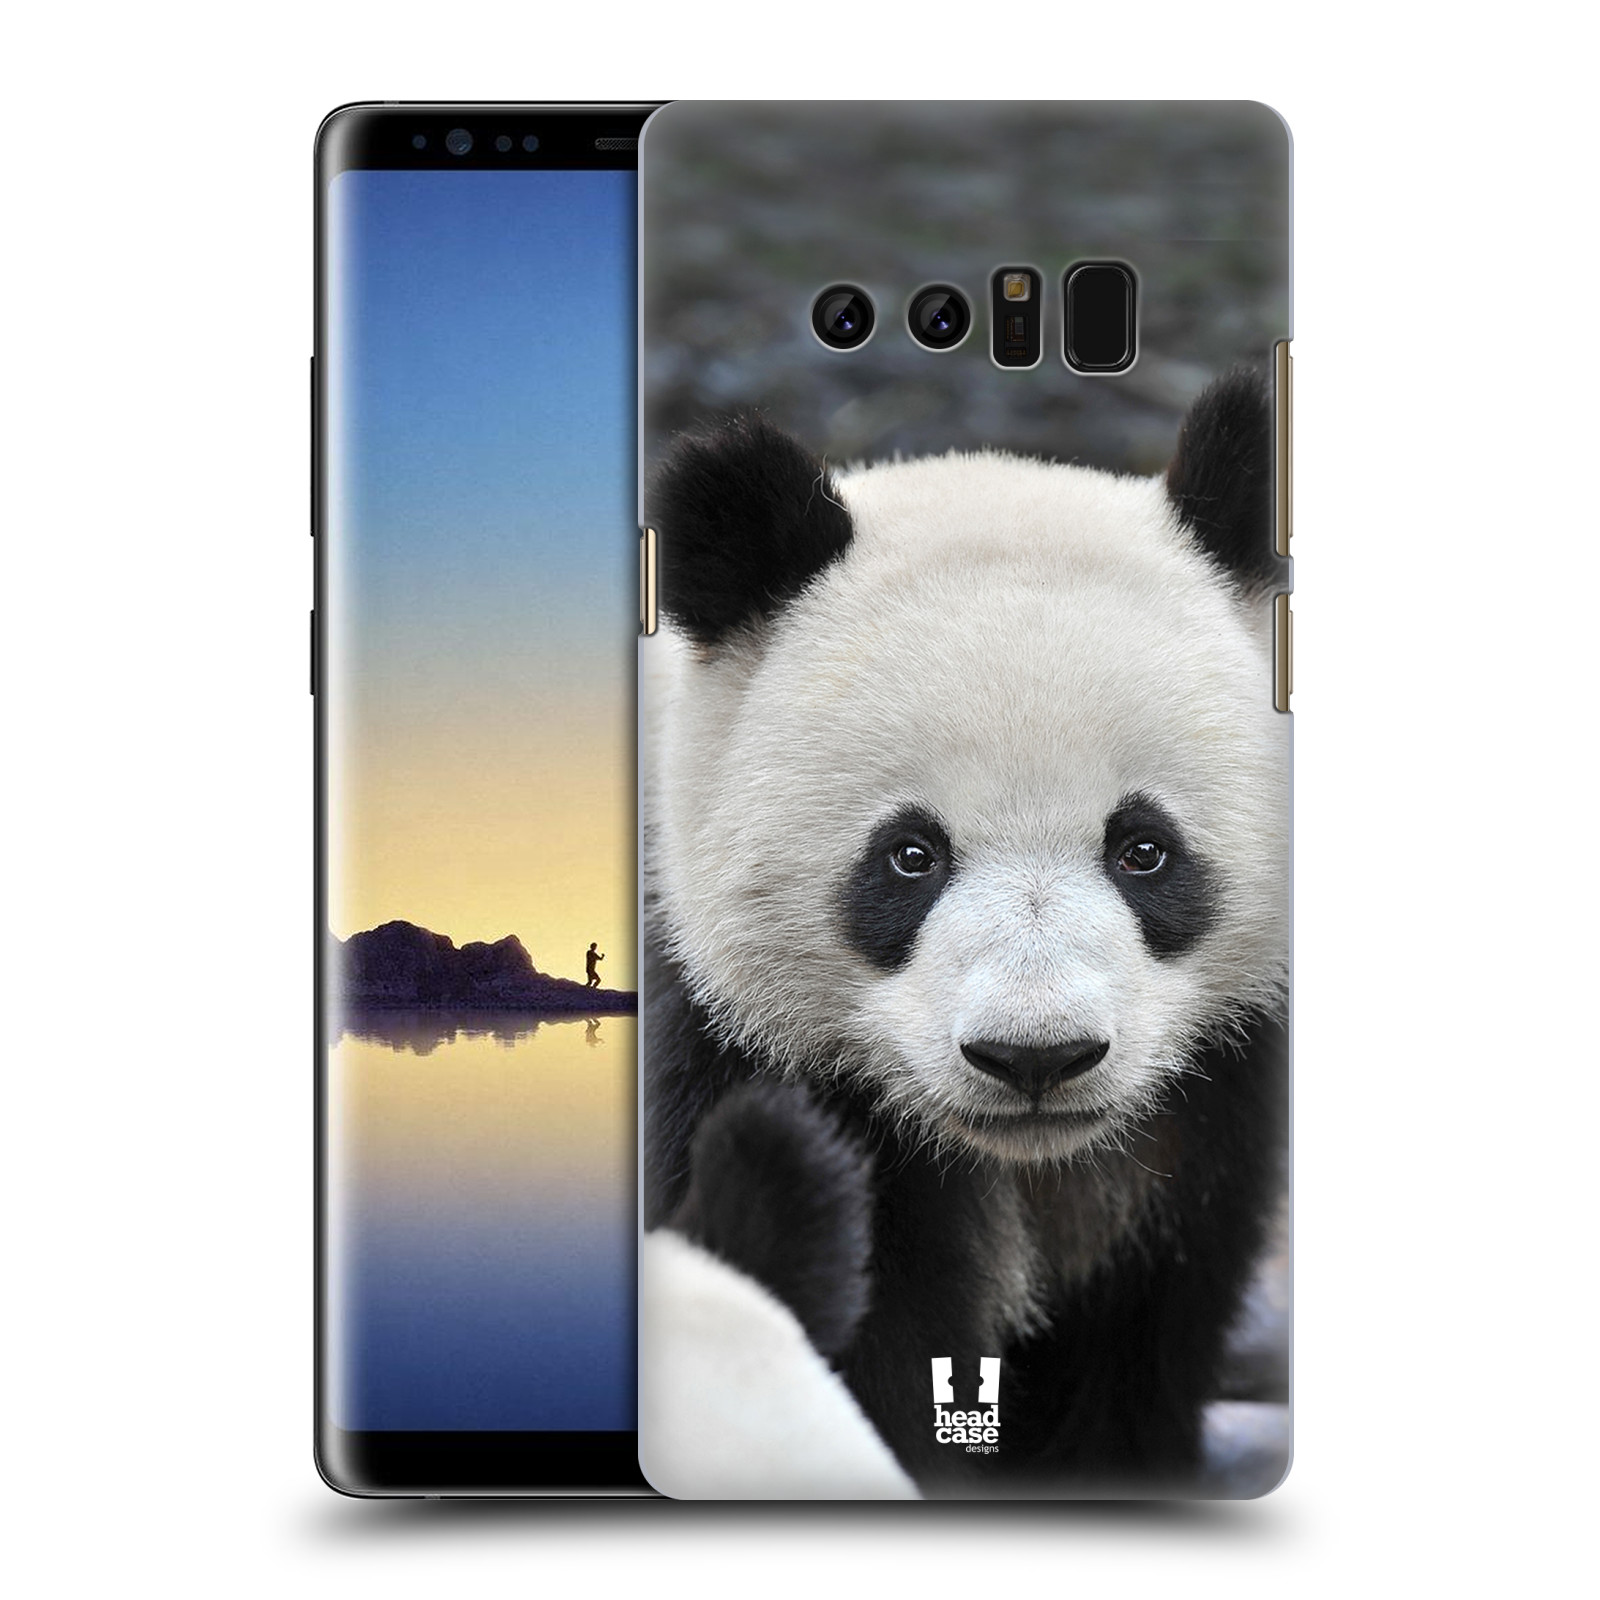 Zadní obal pro mobil Samsung Galaxy Note 8 - HEAD CASE - Svět zvířat medvěd panda